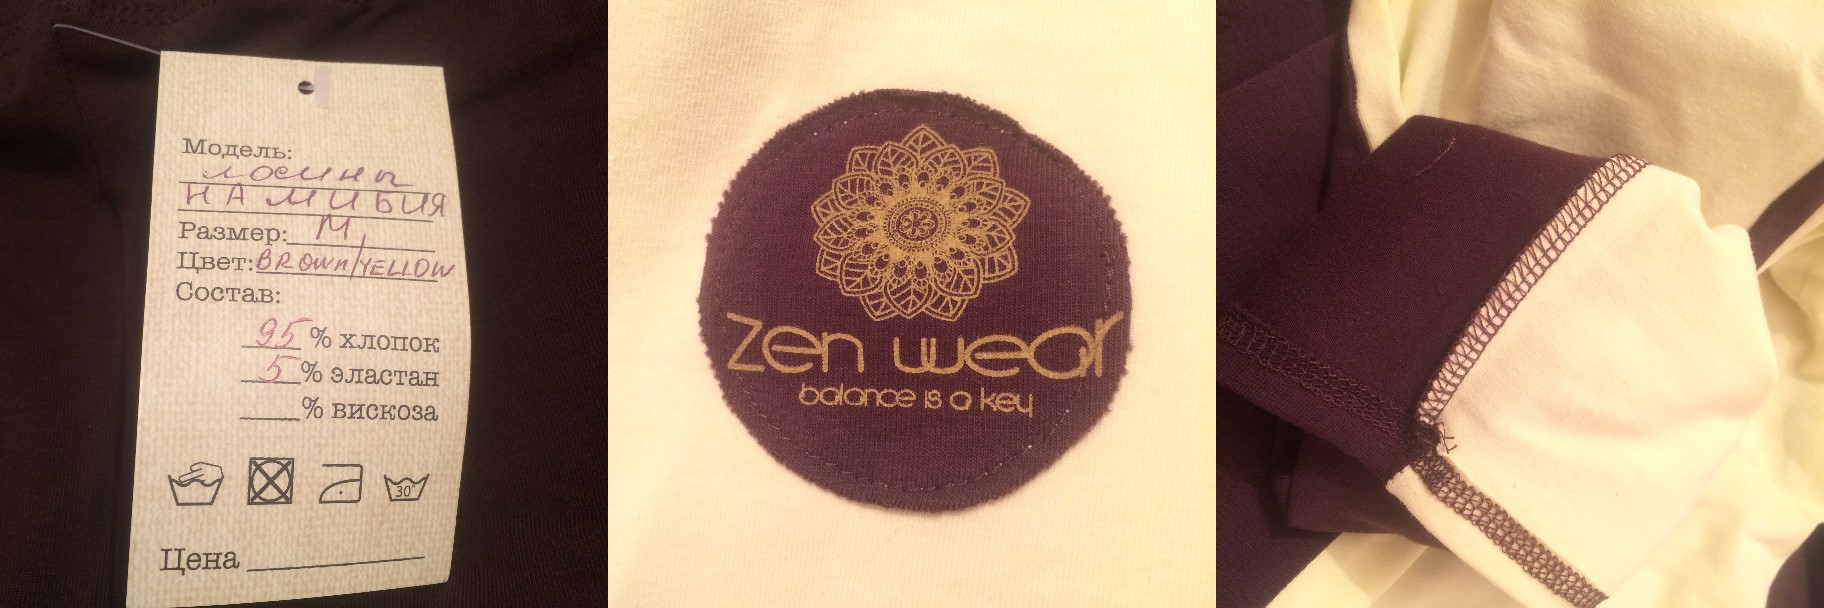 одяг Zen Wear